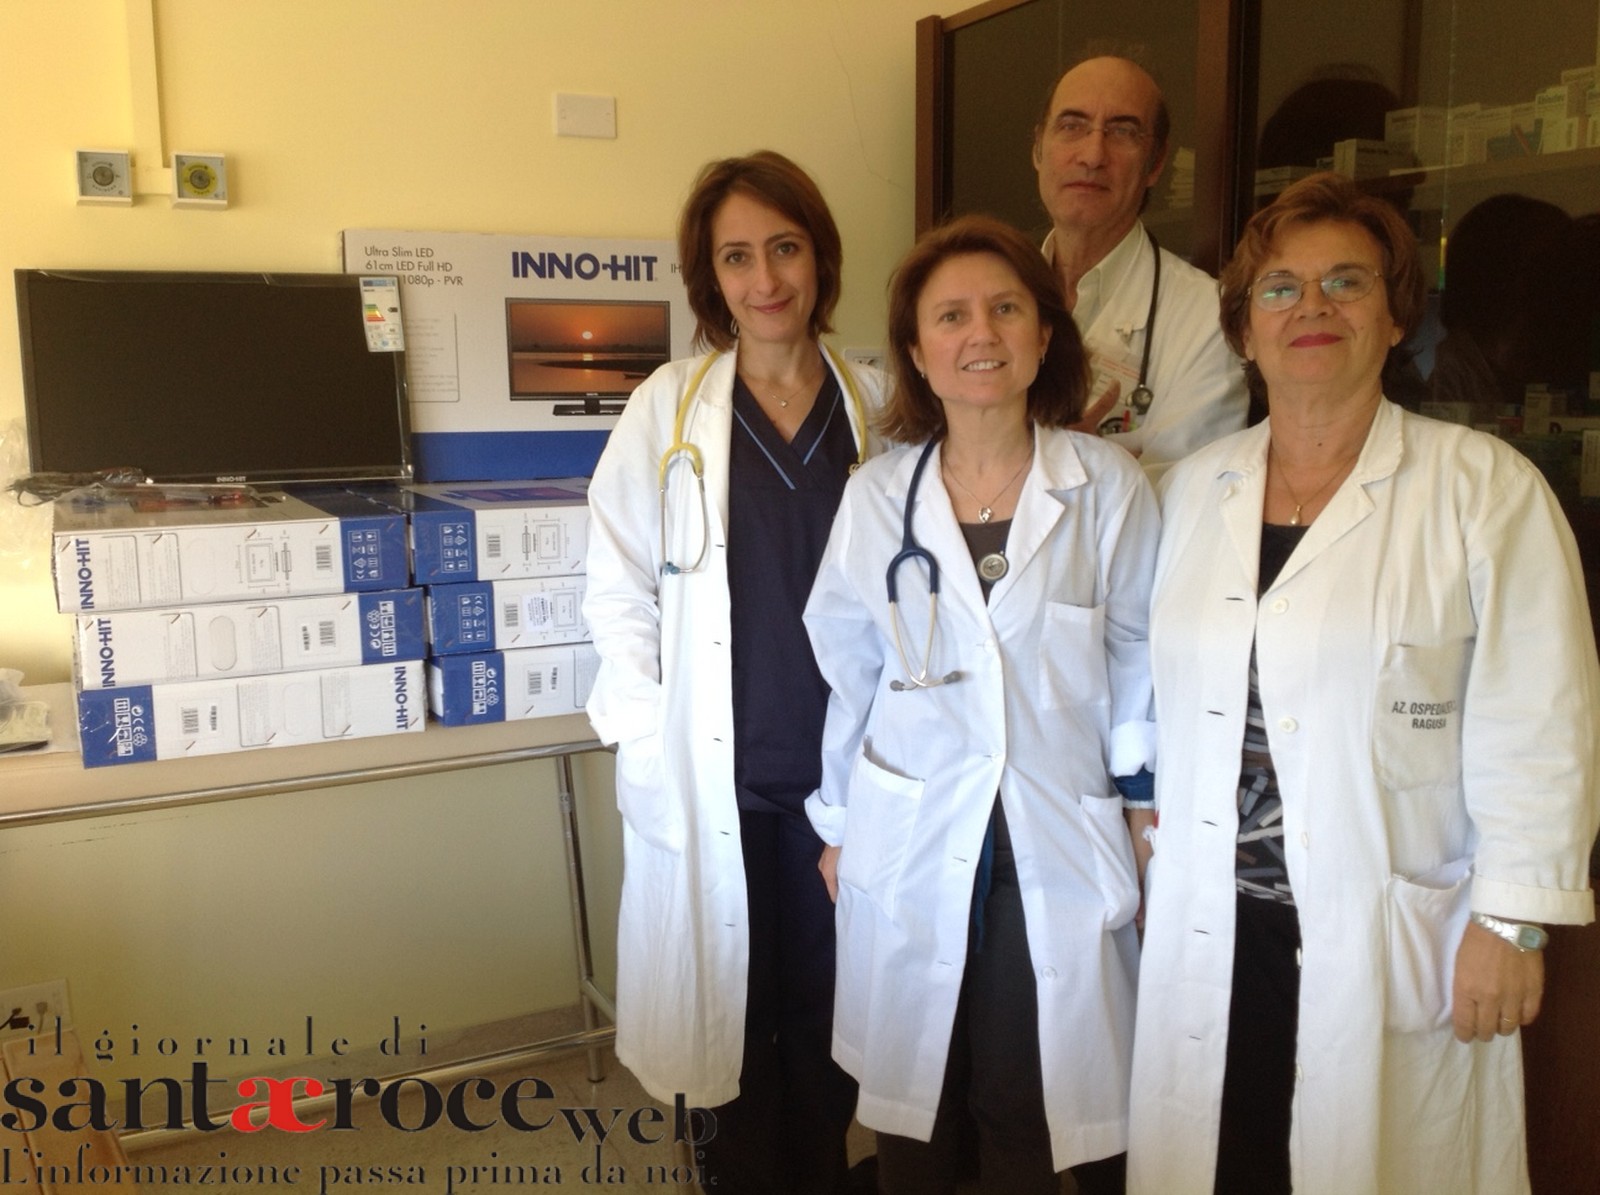  Il signor Massimo Fichera dona 8 televisori al reparto di Pediatria dell’Ospedale Maria Paternò Arezzo